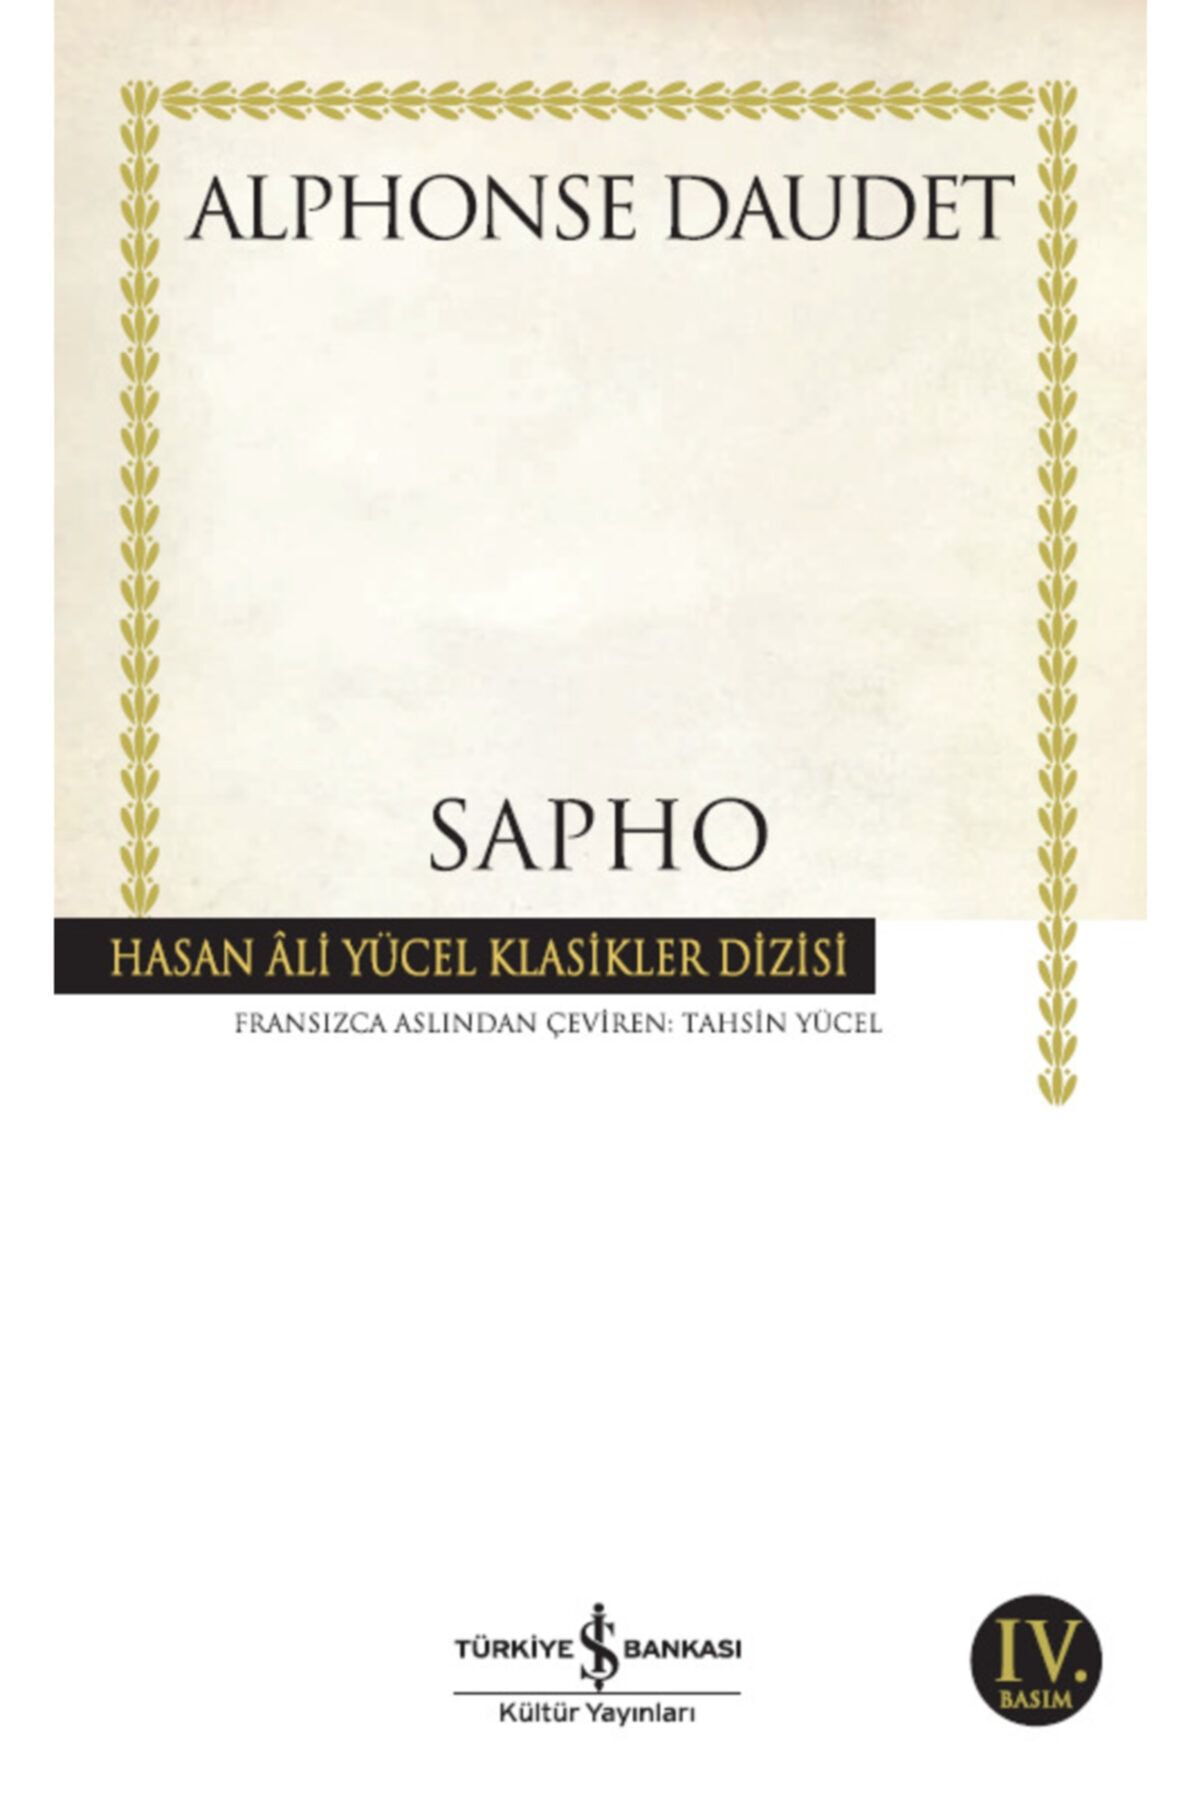 Türkiye İş Bankası Kültür Yayınları Iş Bankası - Sapho / Alphonse Daudet